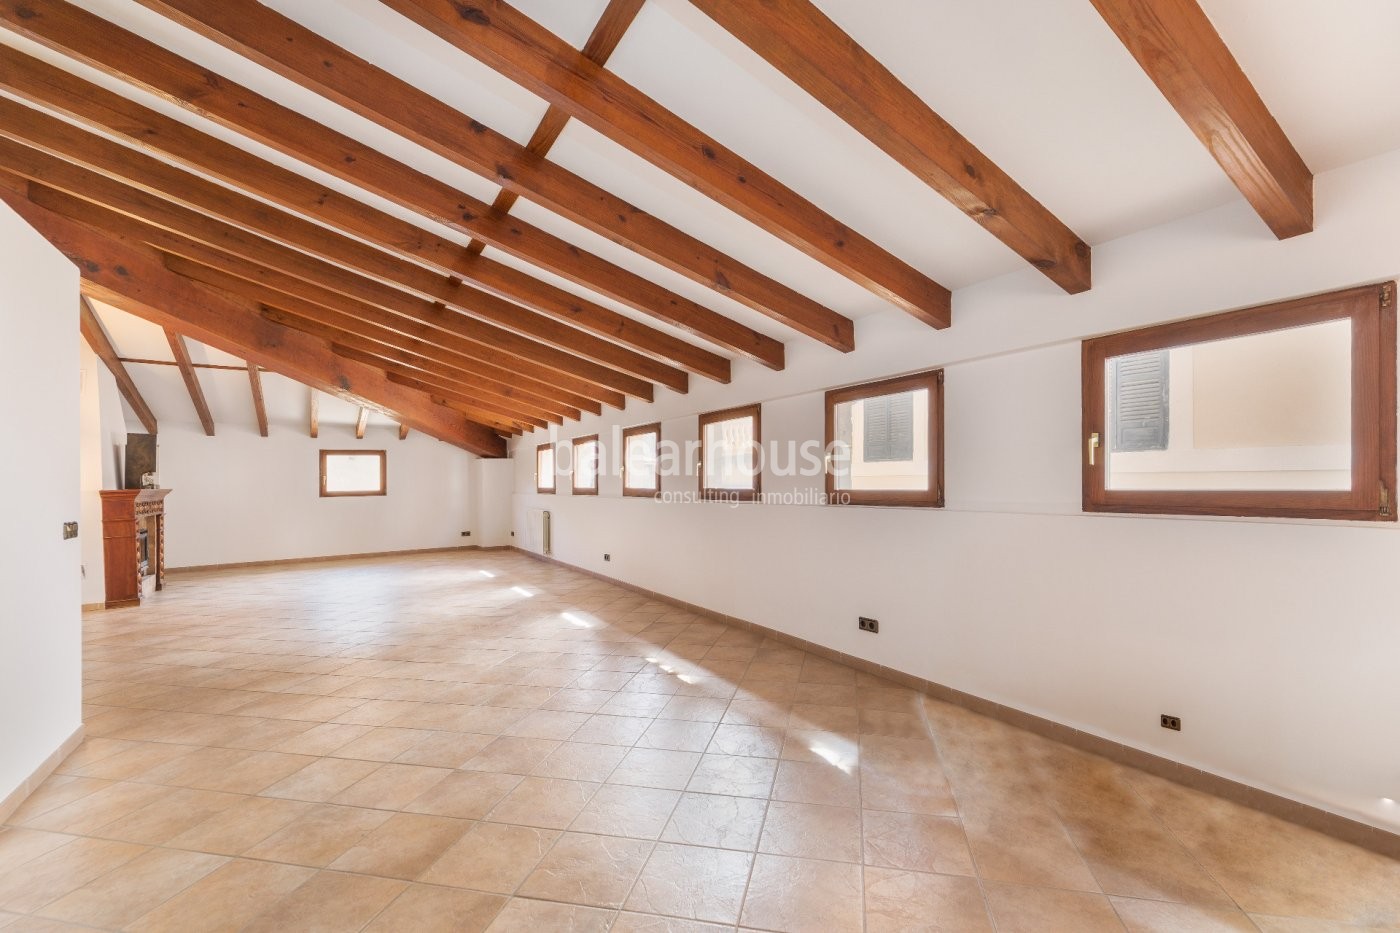 Hervorragendes und helles Penthouse in einem herrschaftlichen Gebäude in Palmas historischem Viertel